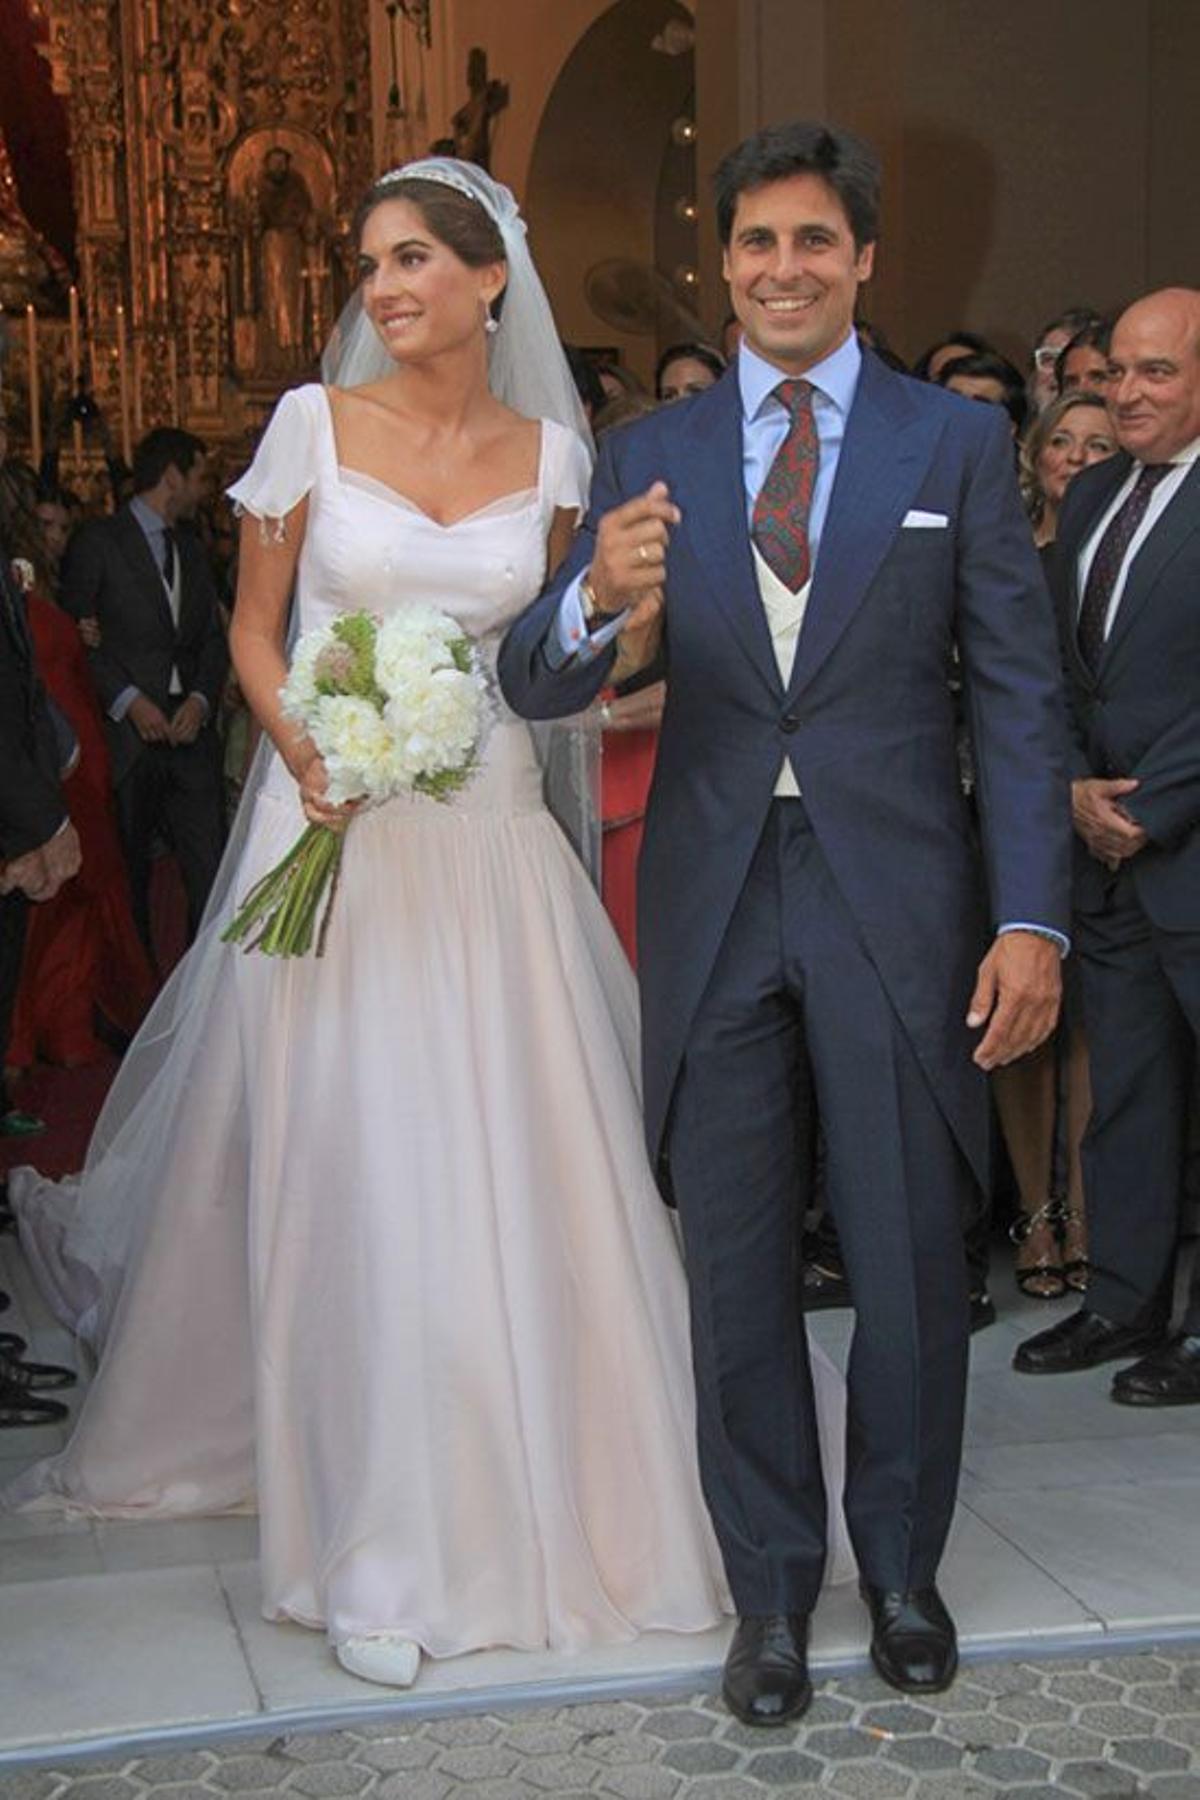 La boda de Francisco Rivera y Lourdes montes